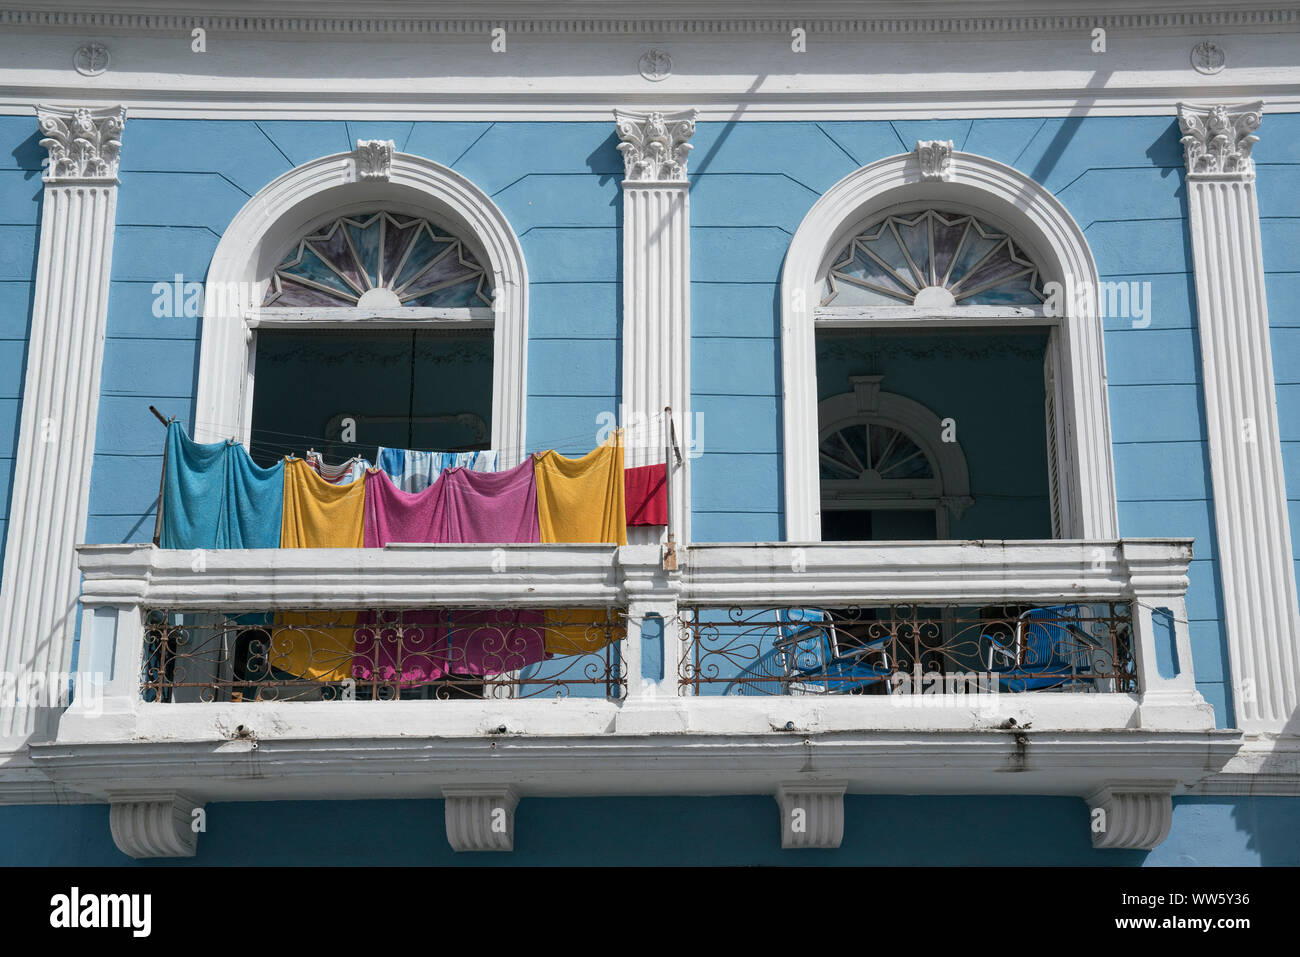 Le séchage sur une blanchisserie balcon d'une maison bleue en style colonial, Santiago de Cuba Banque D'Images